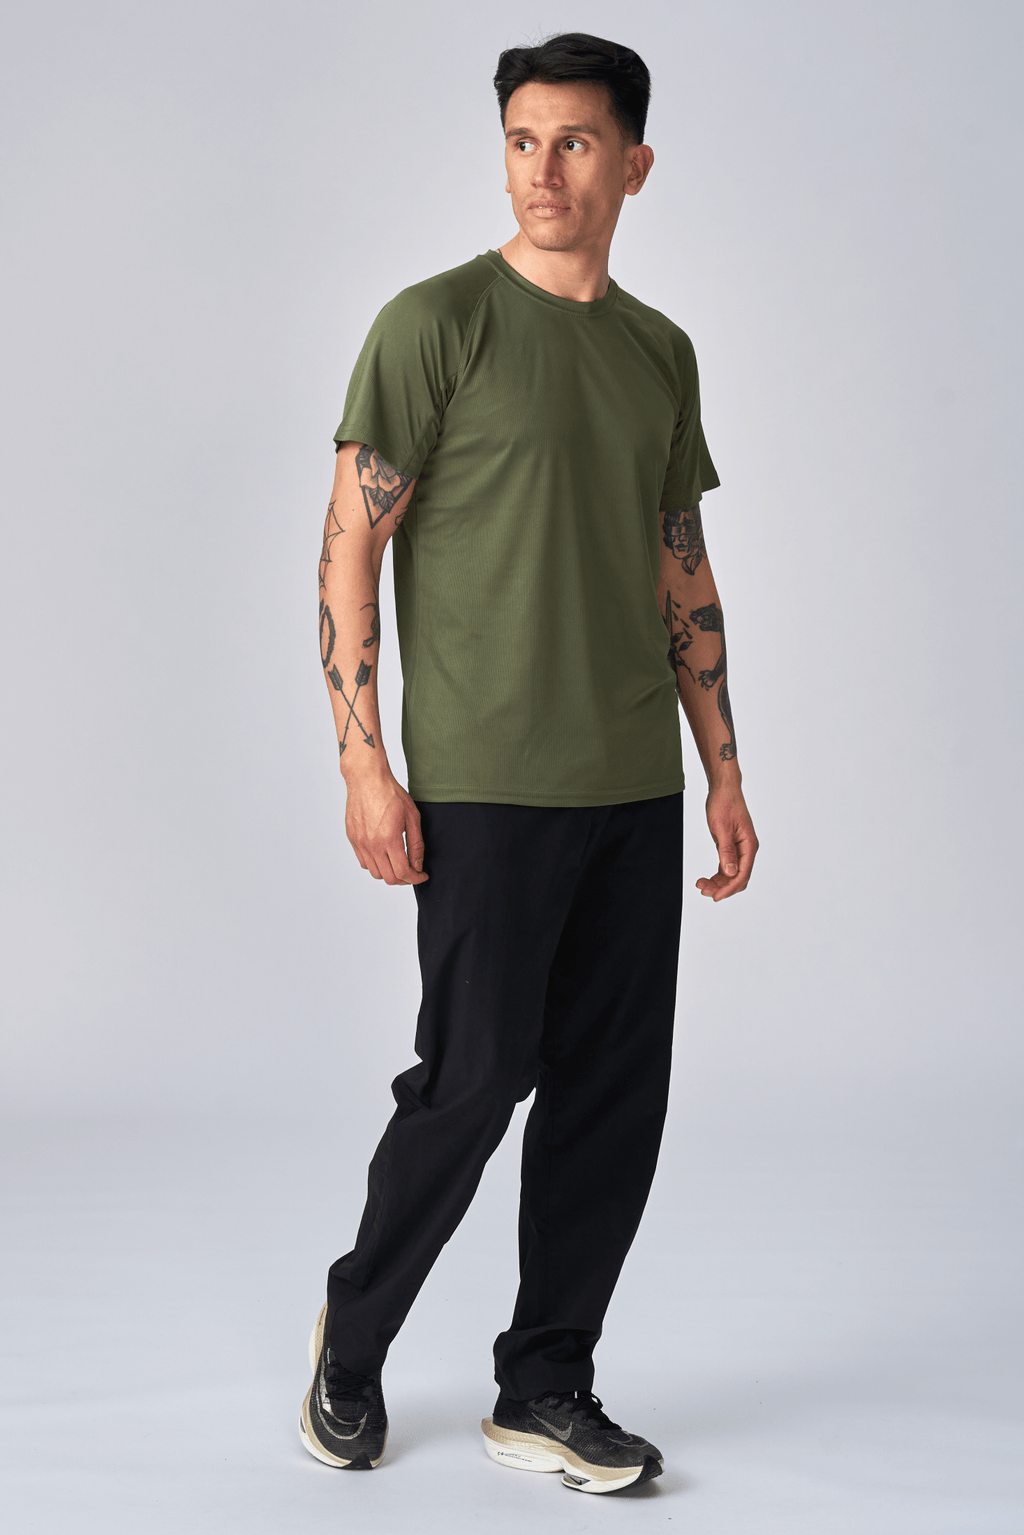 Trenings T-shirt - Army Grønn